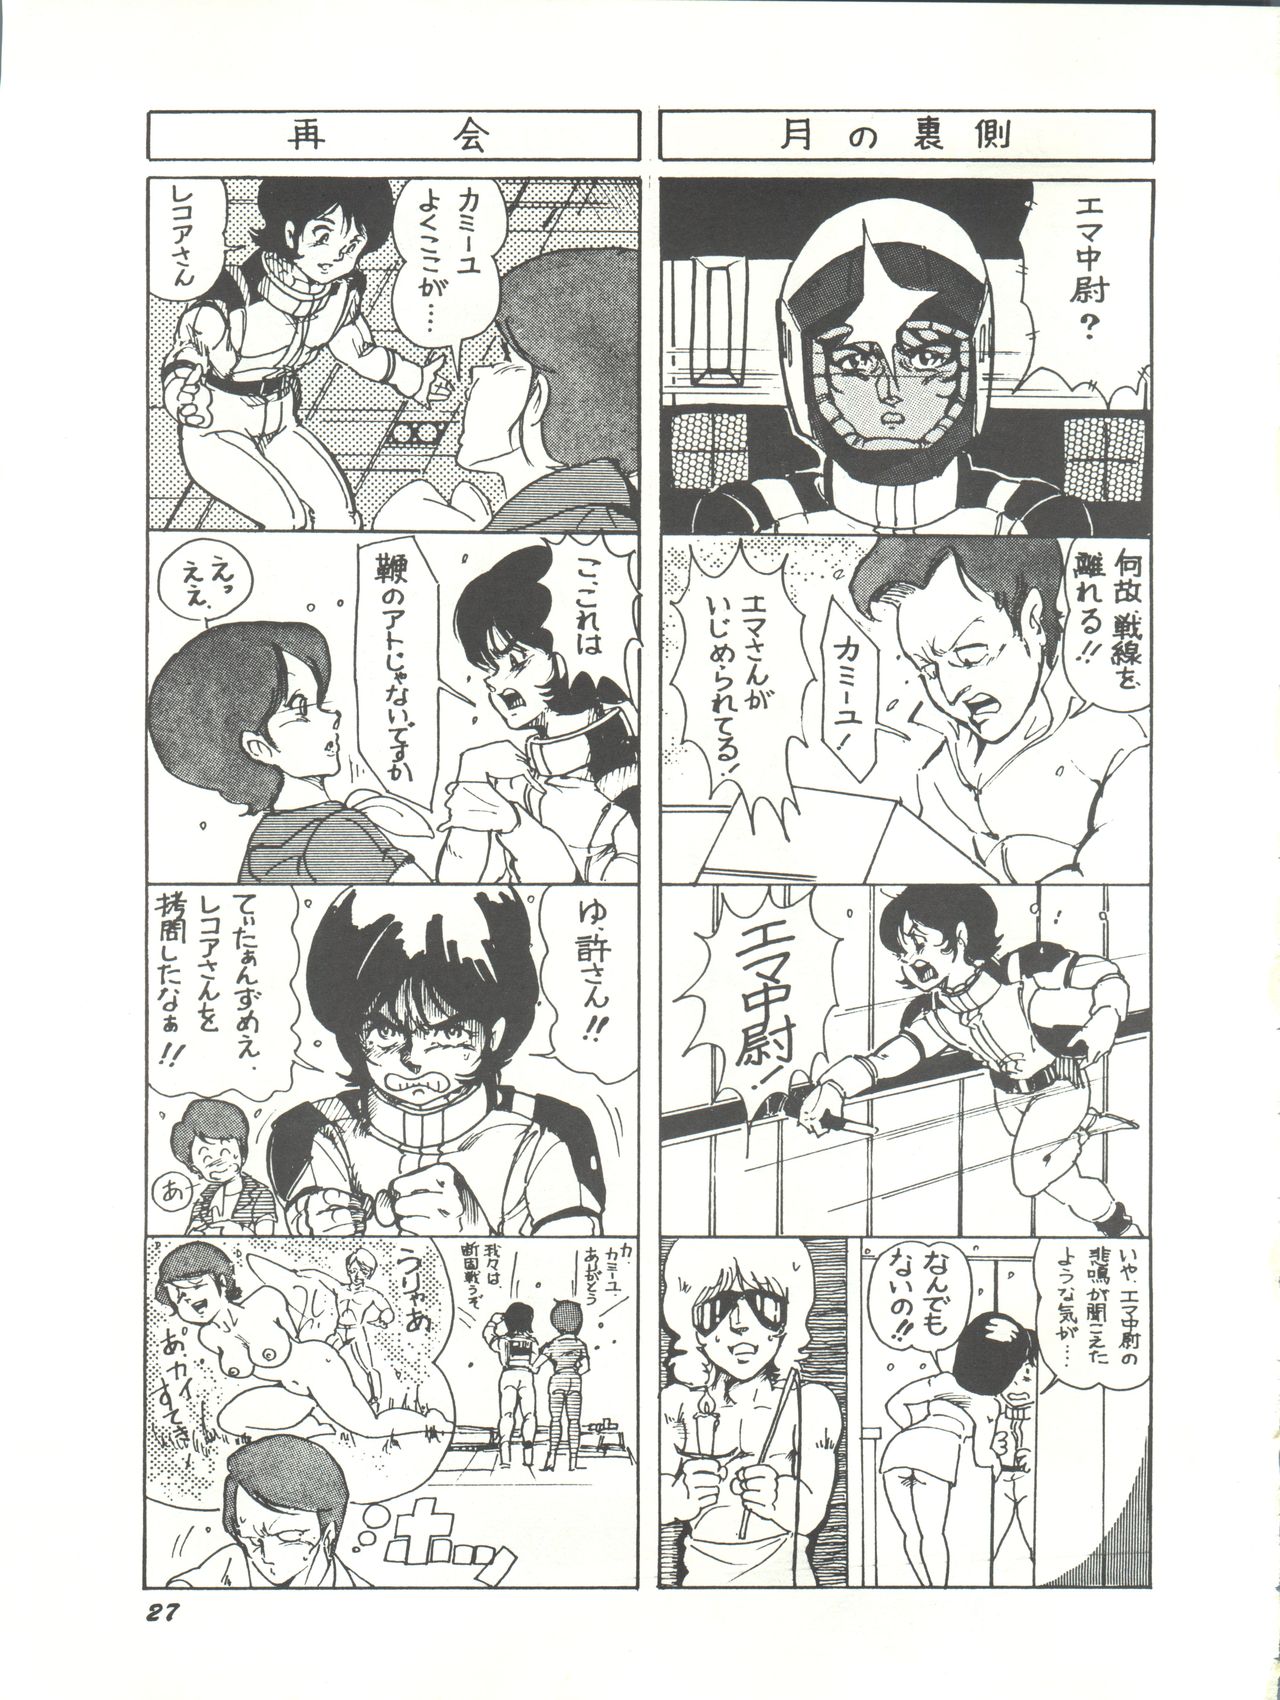 [Studio SFC (Various)] Parodic 2 Kaiteiban (Dirty Pair, Zeta Gundam, Little Princess Sara) page 27 full